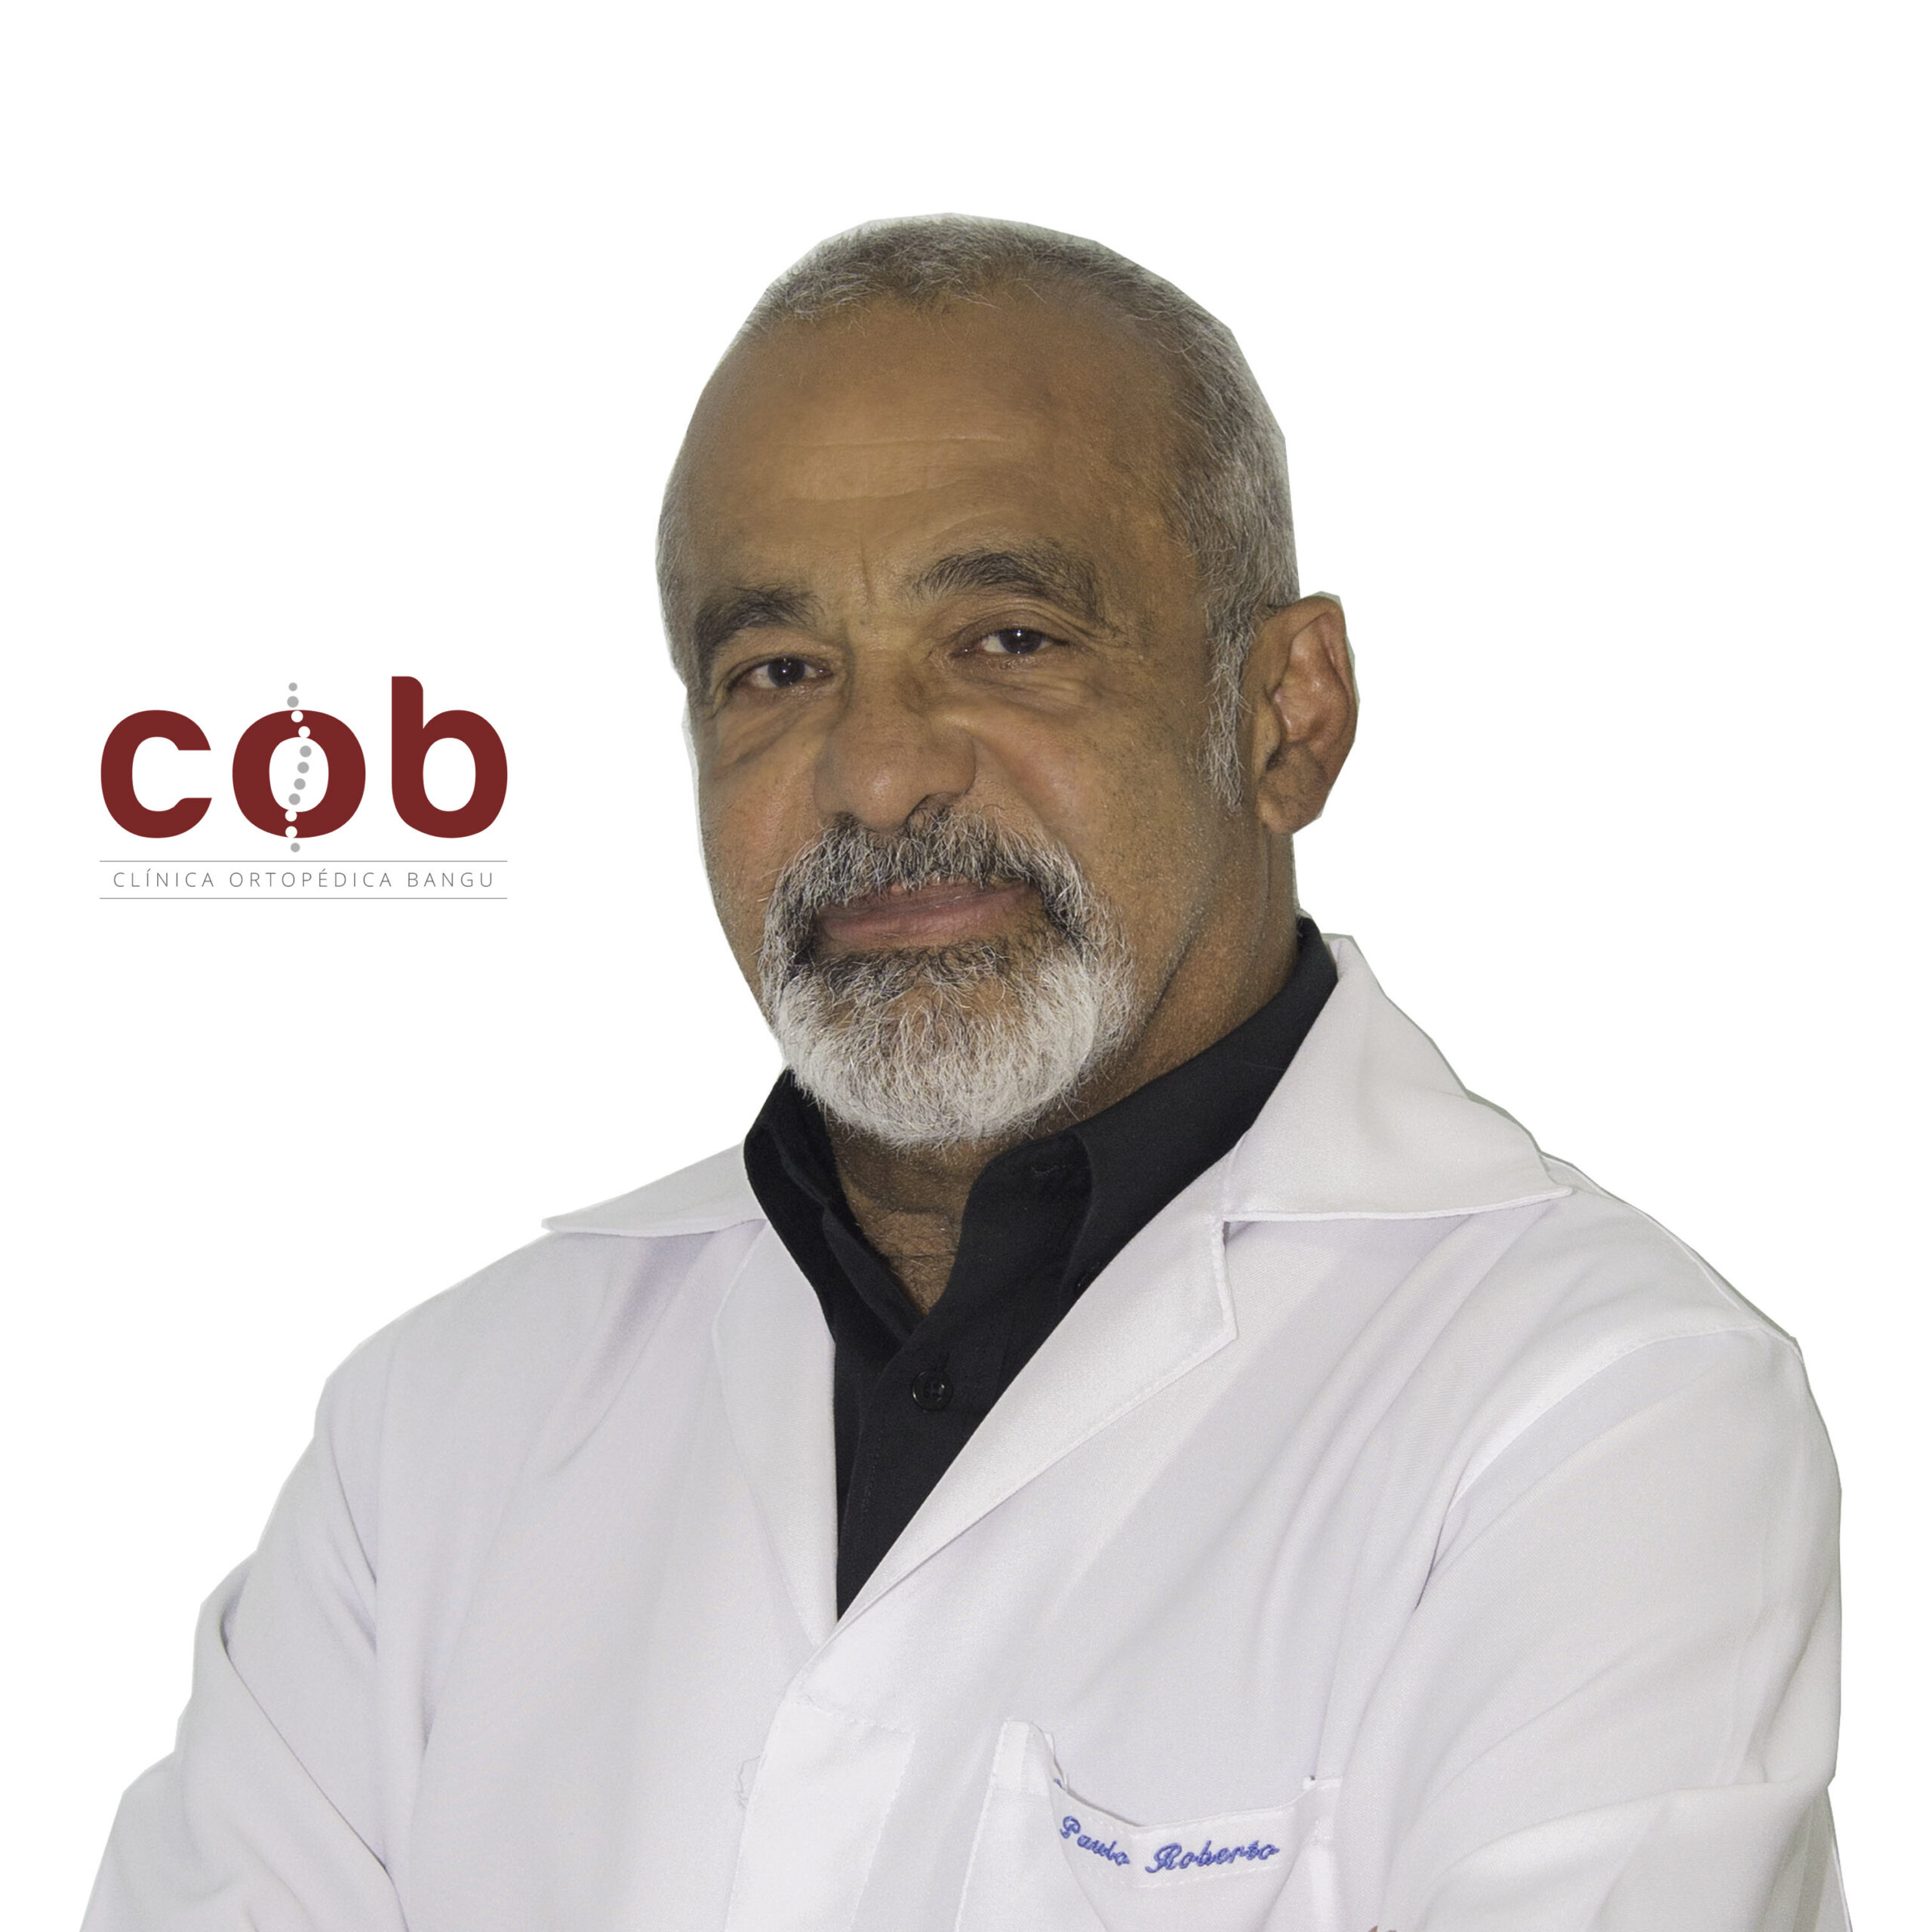 Dr. Paulo Roberto R. de Almeida